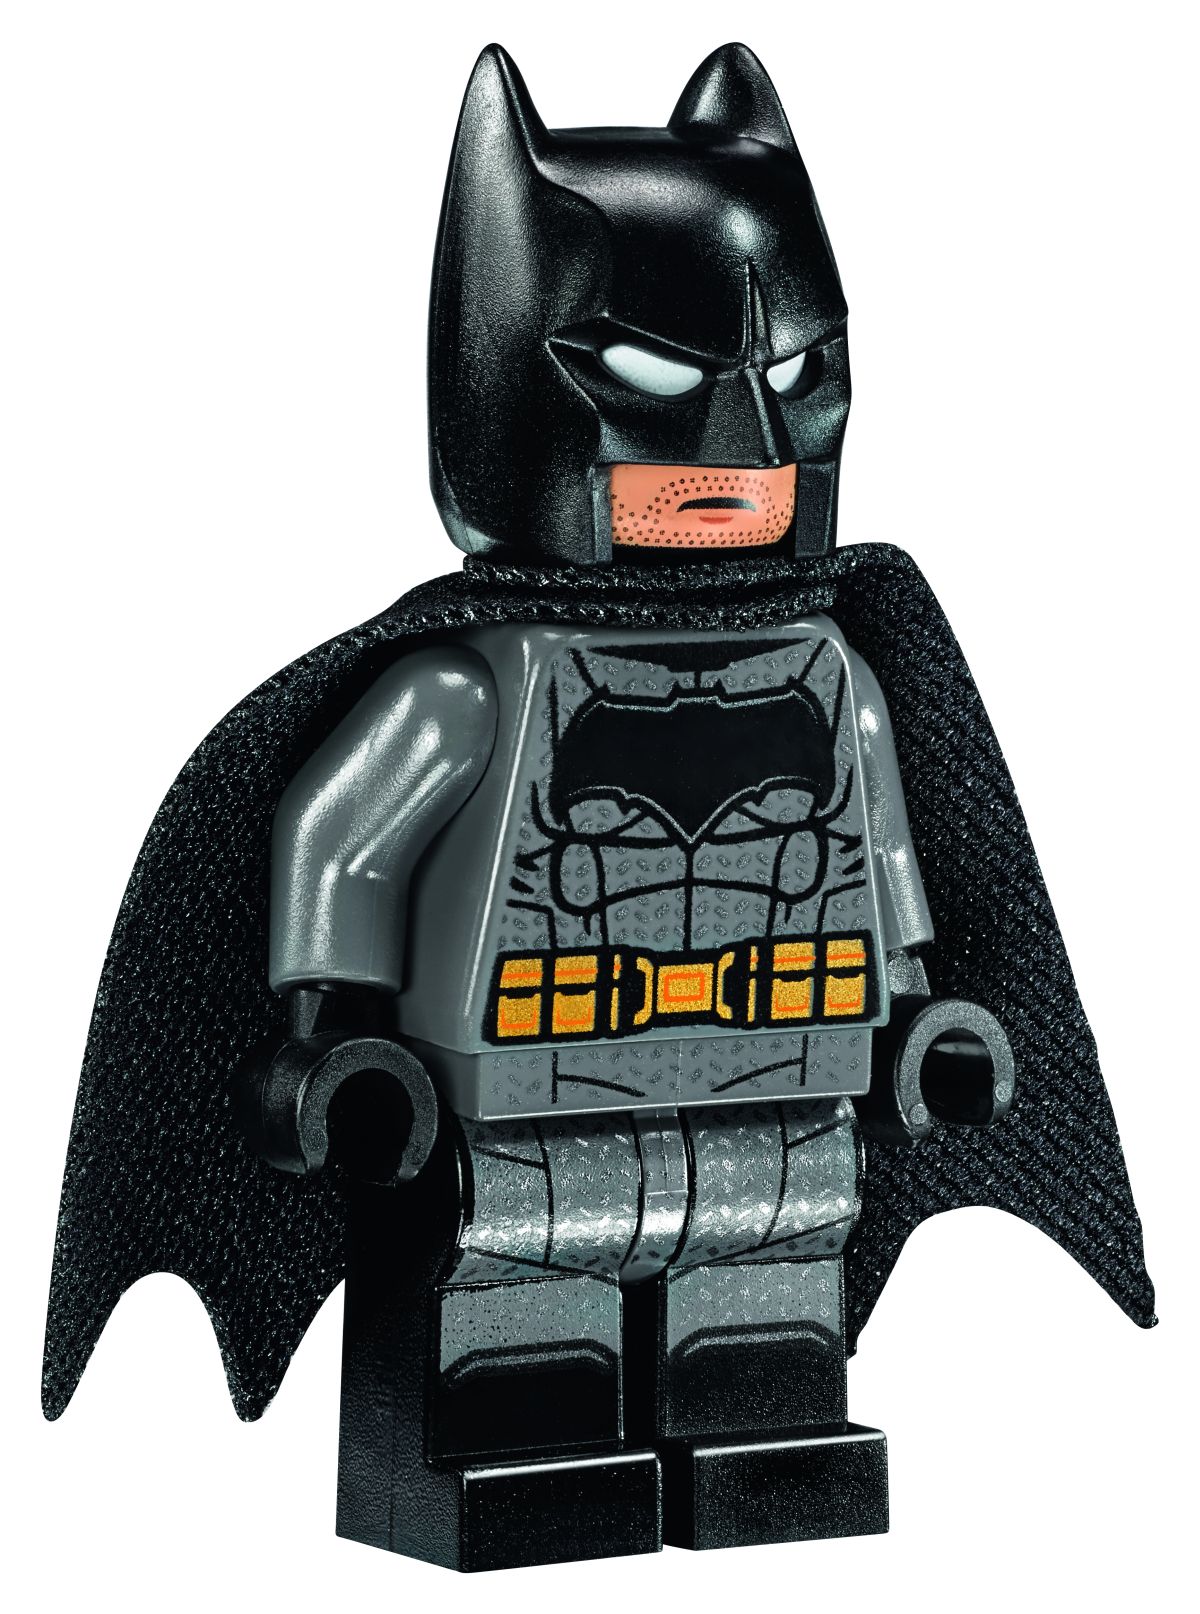 New LEGO Batman Movie Sets Revealed